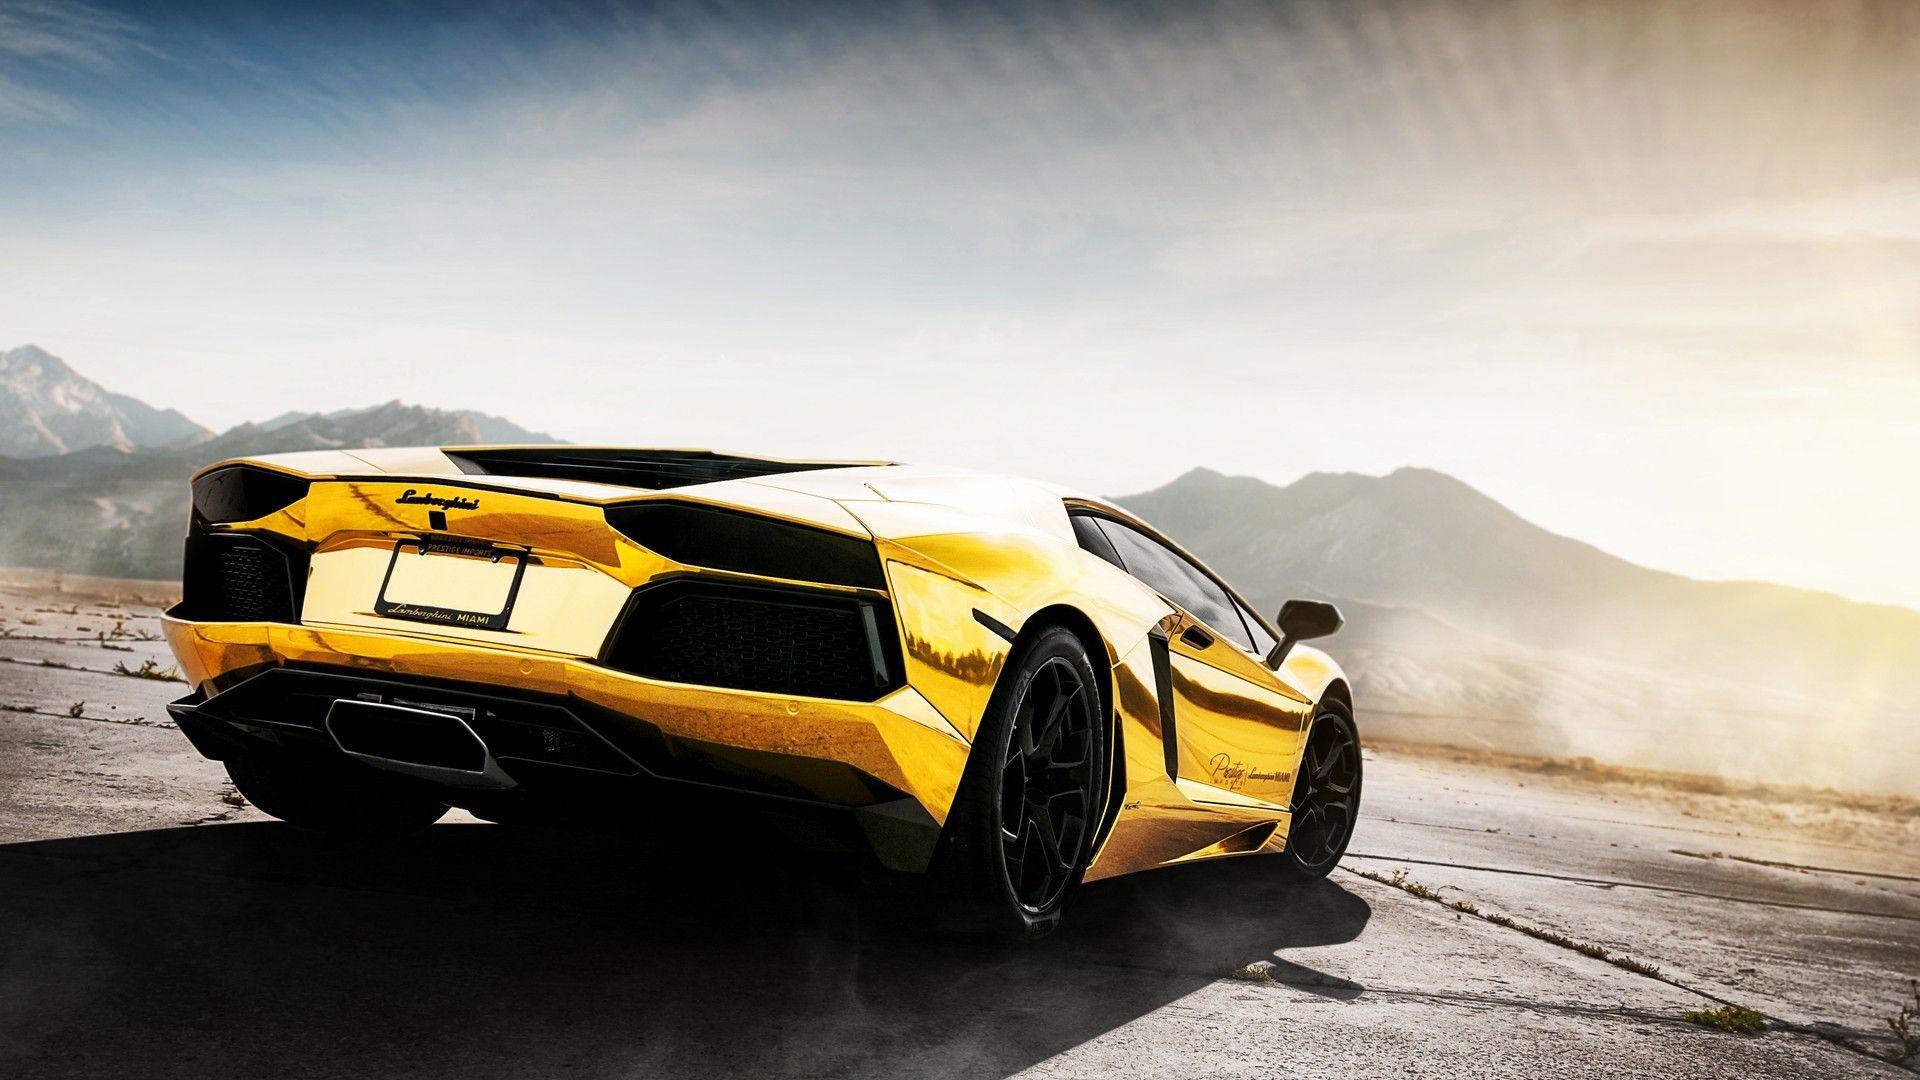 gold, #yellow cars, #landscape, #rims, #Lamborghini, #vehicle